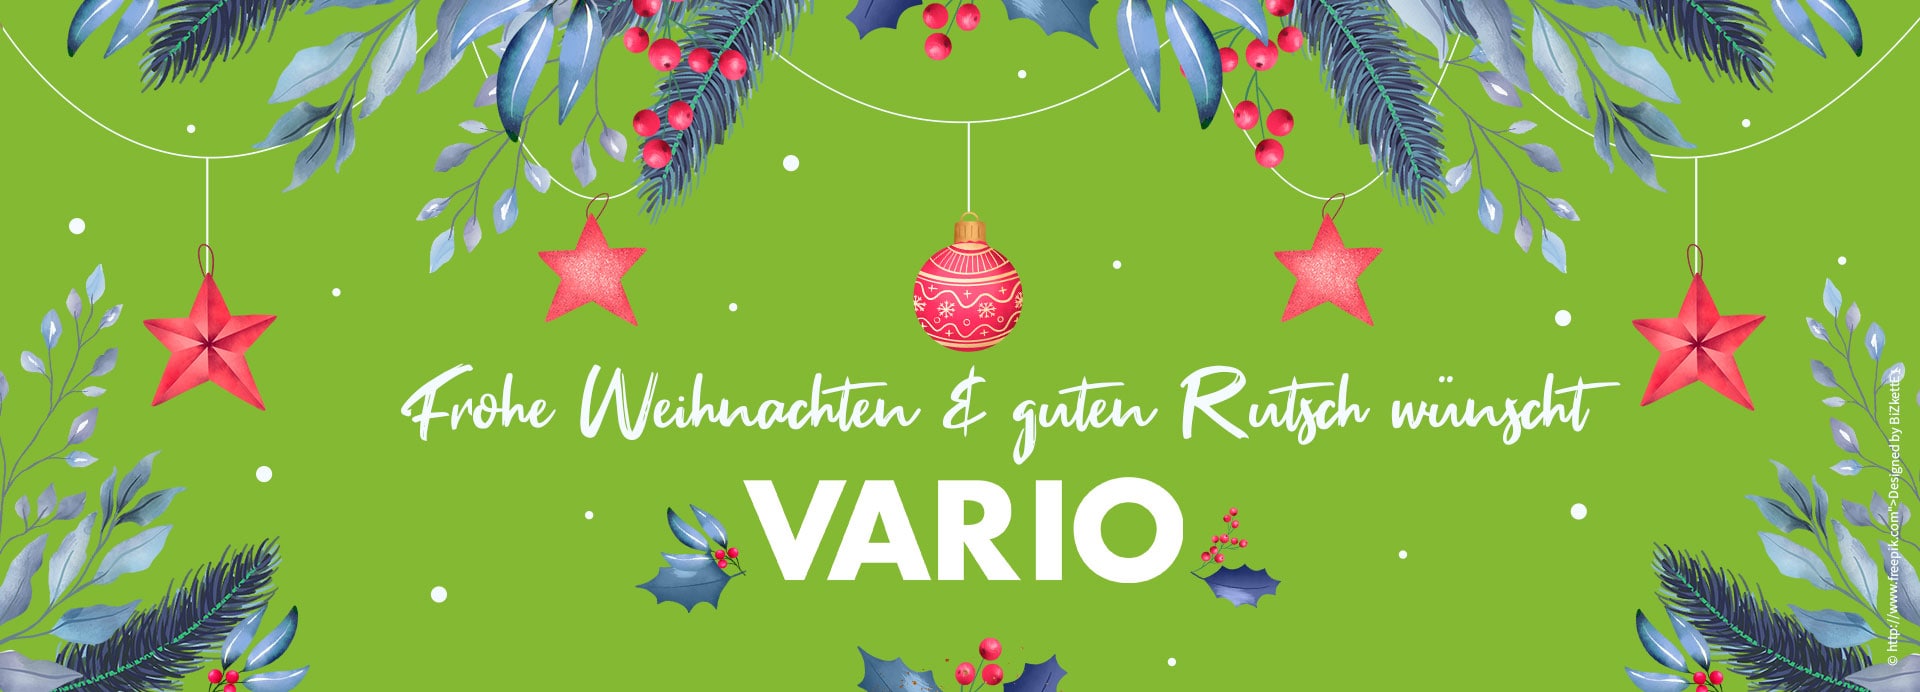 VARIO wünscht Frohe Weihnachten & Guten Rutsch